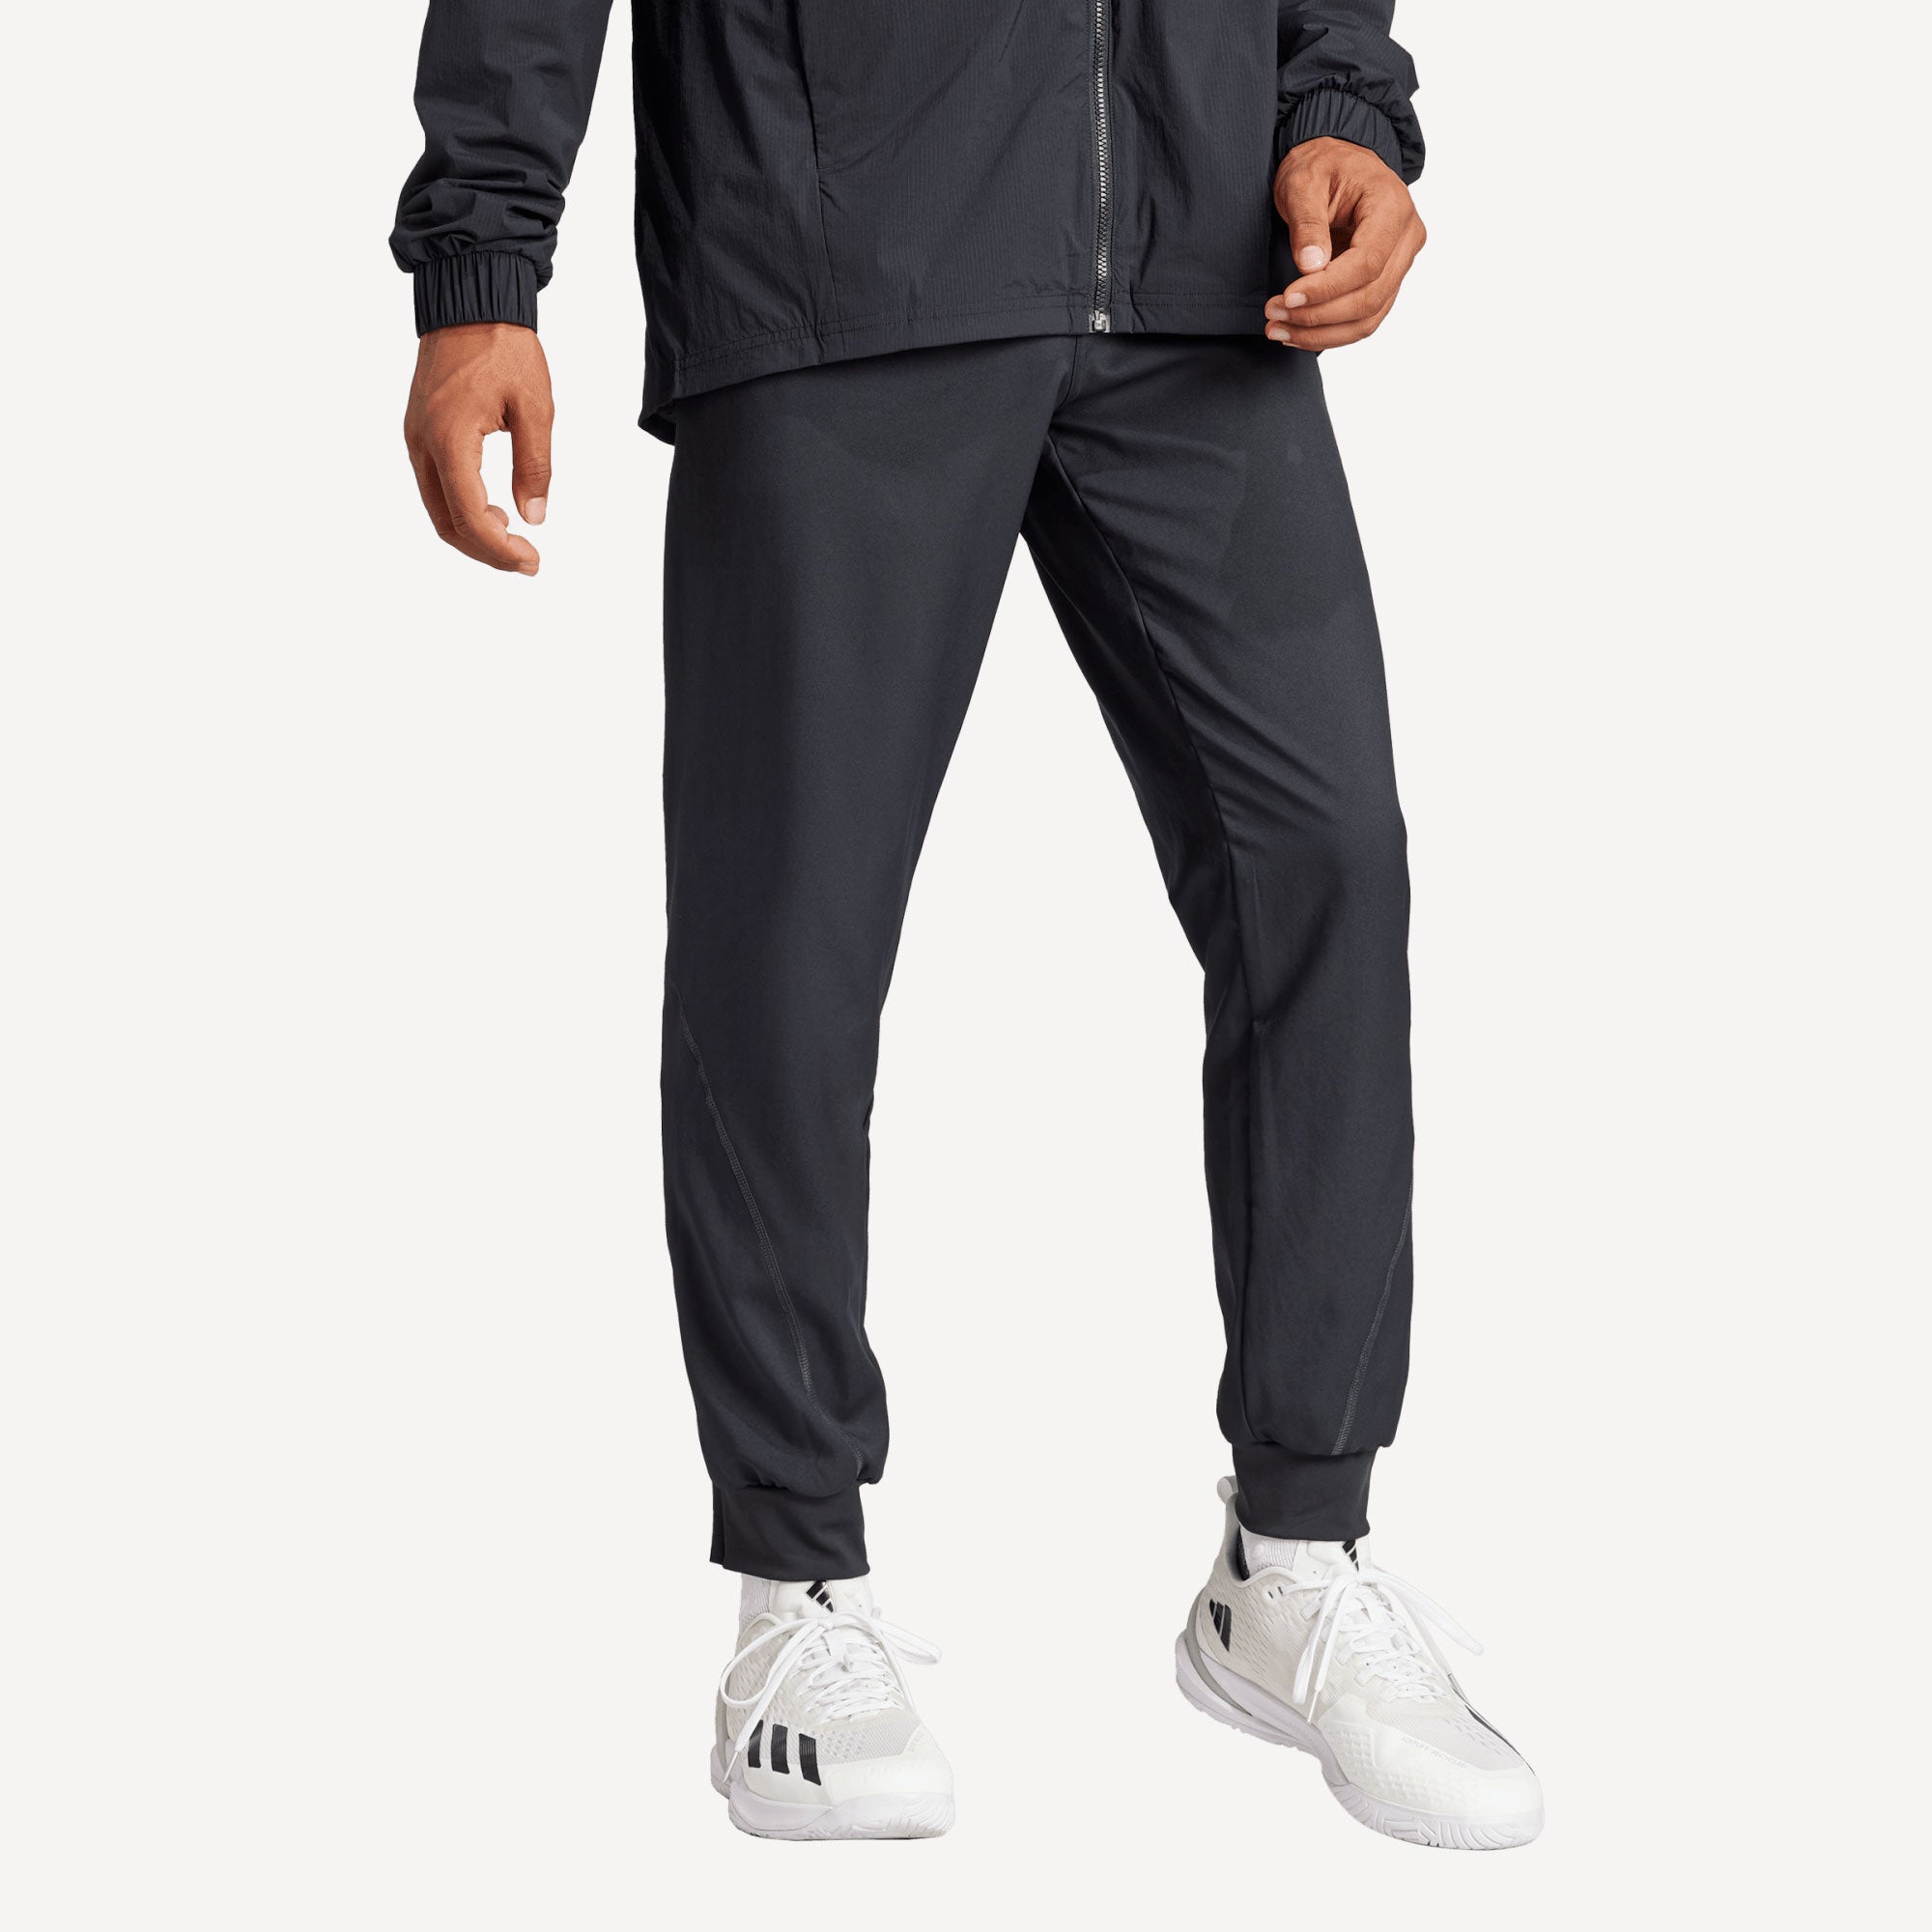 adidas Pro Melbourne Men's Tennis Pants - Black (3)